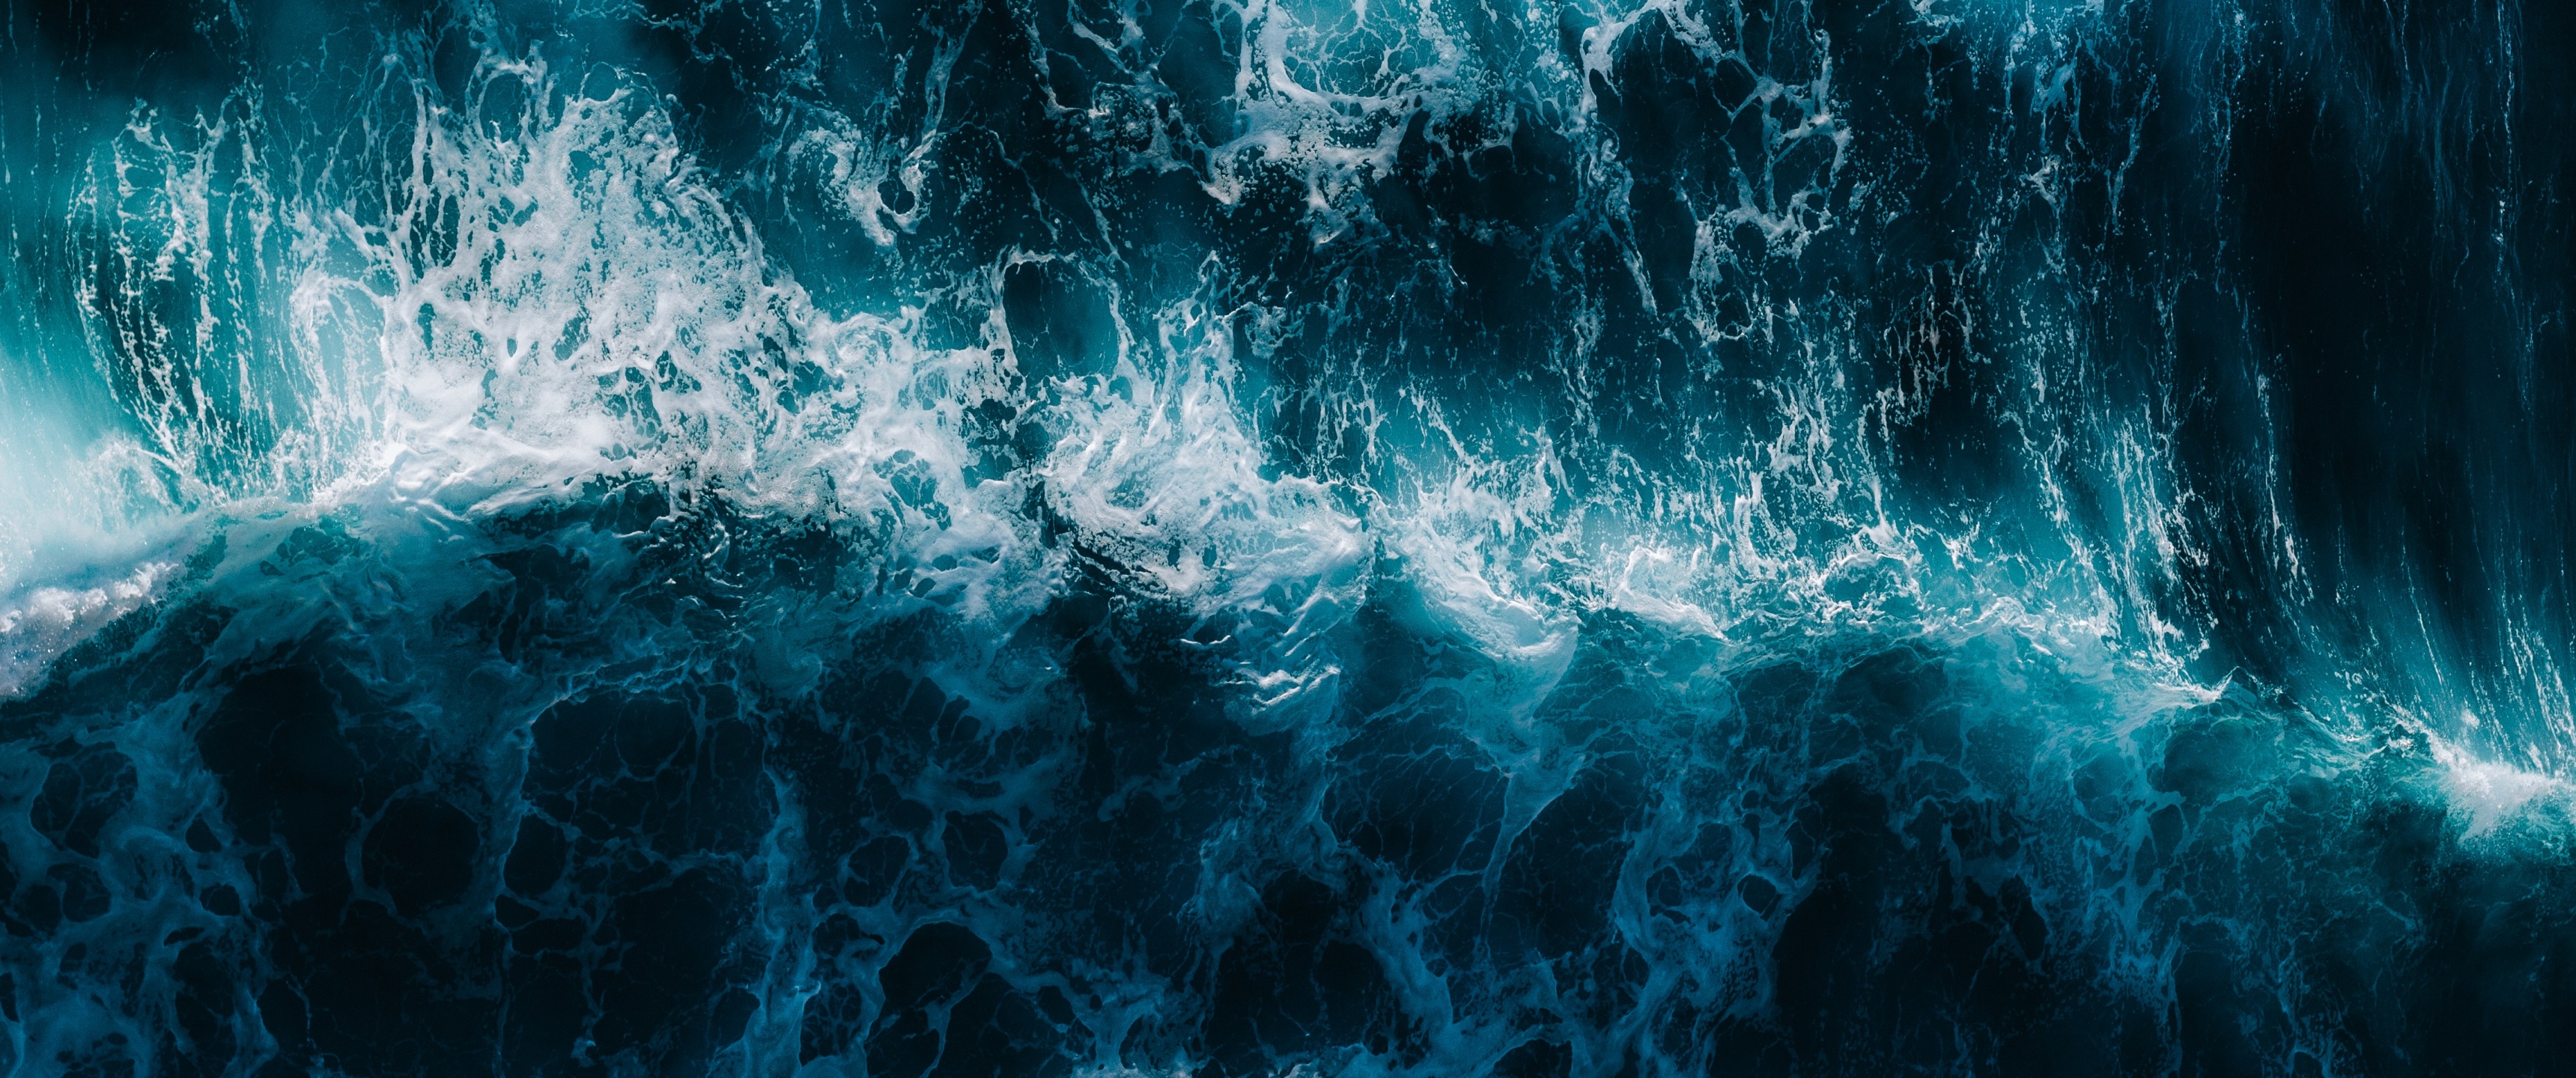 Ocean Waves Wallpapers